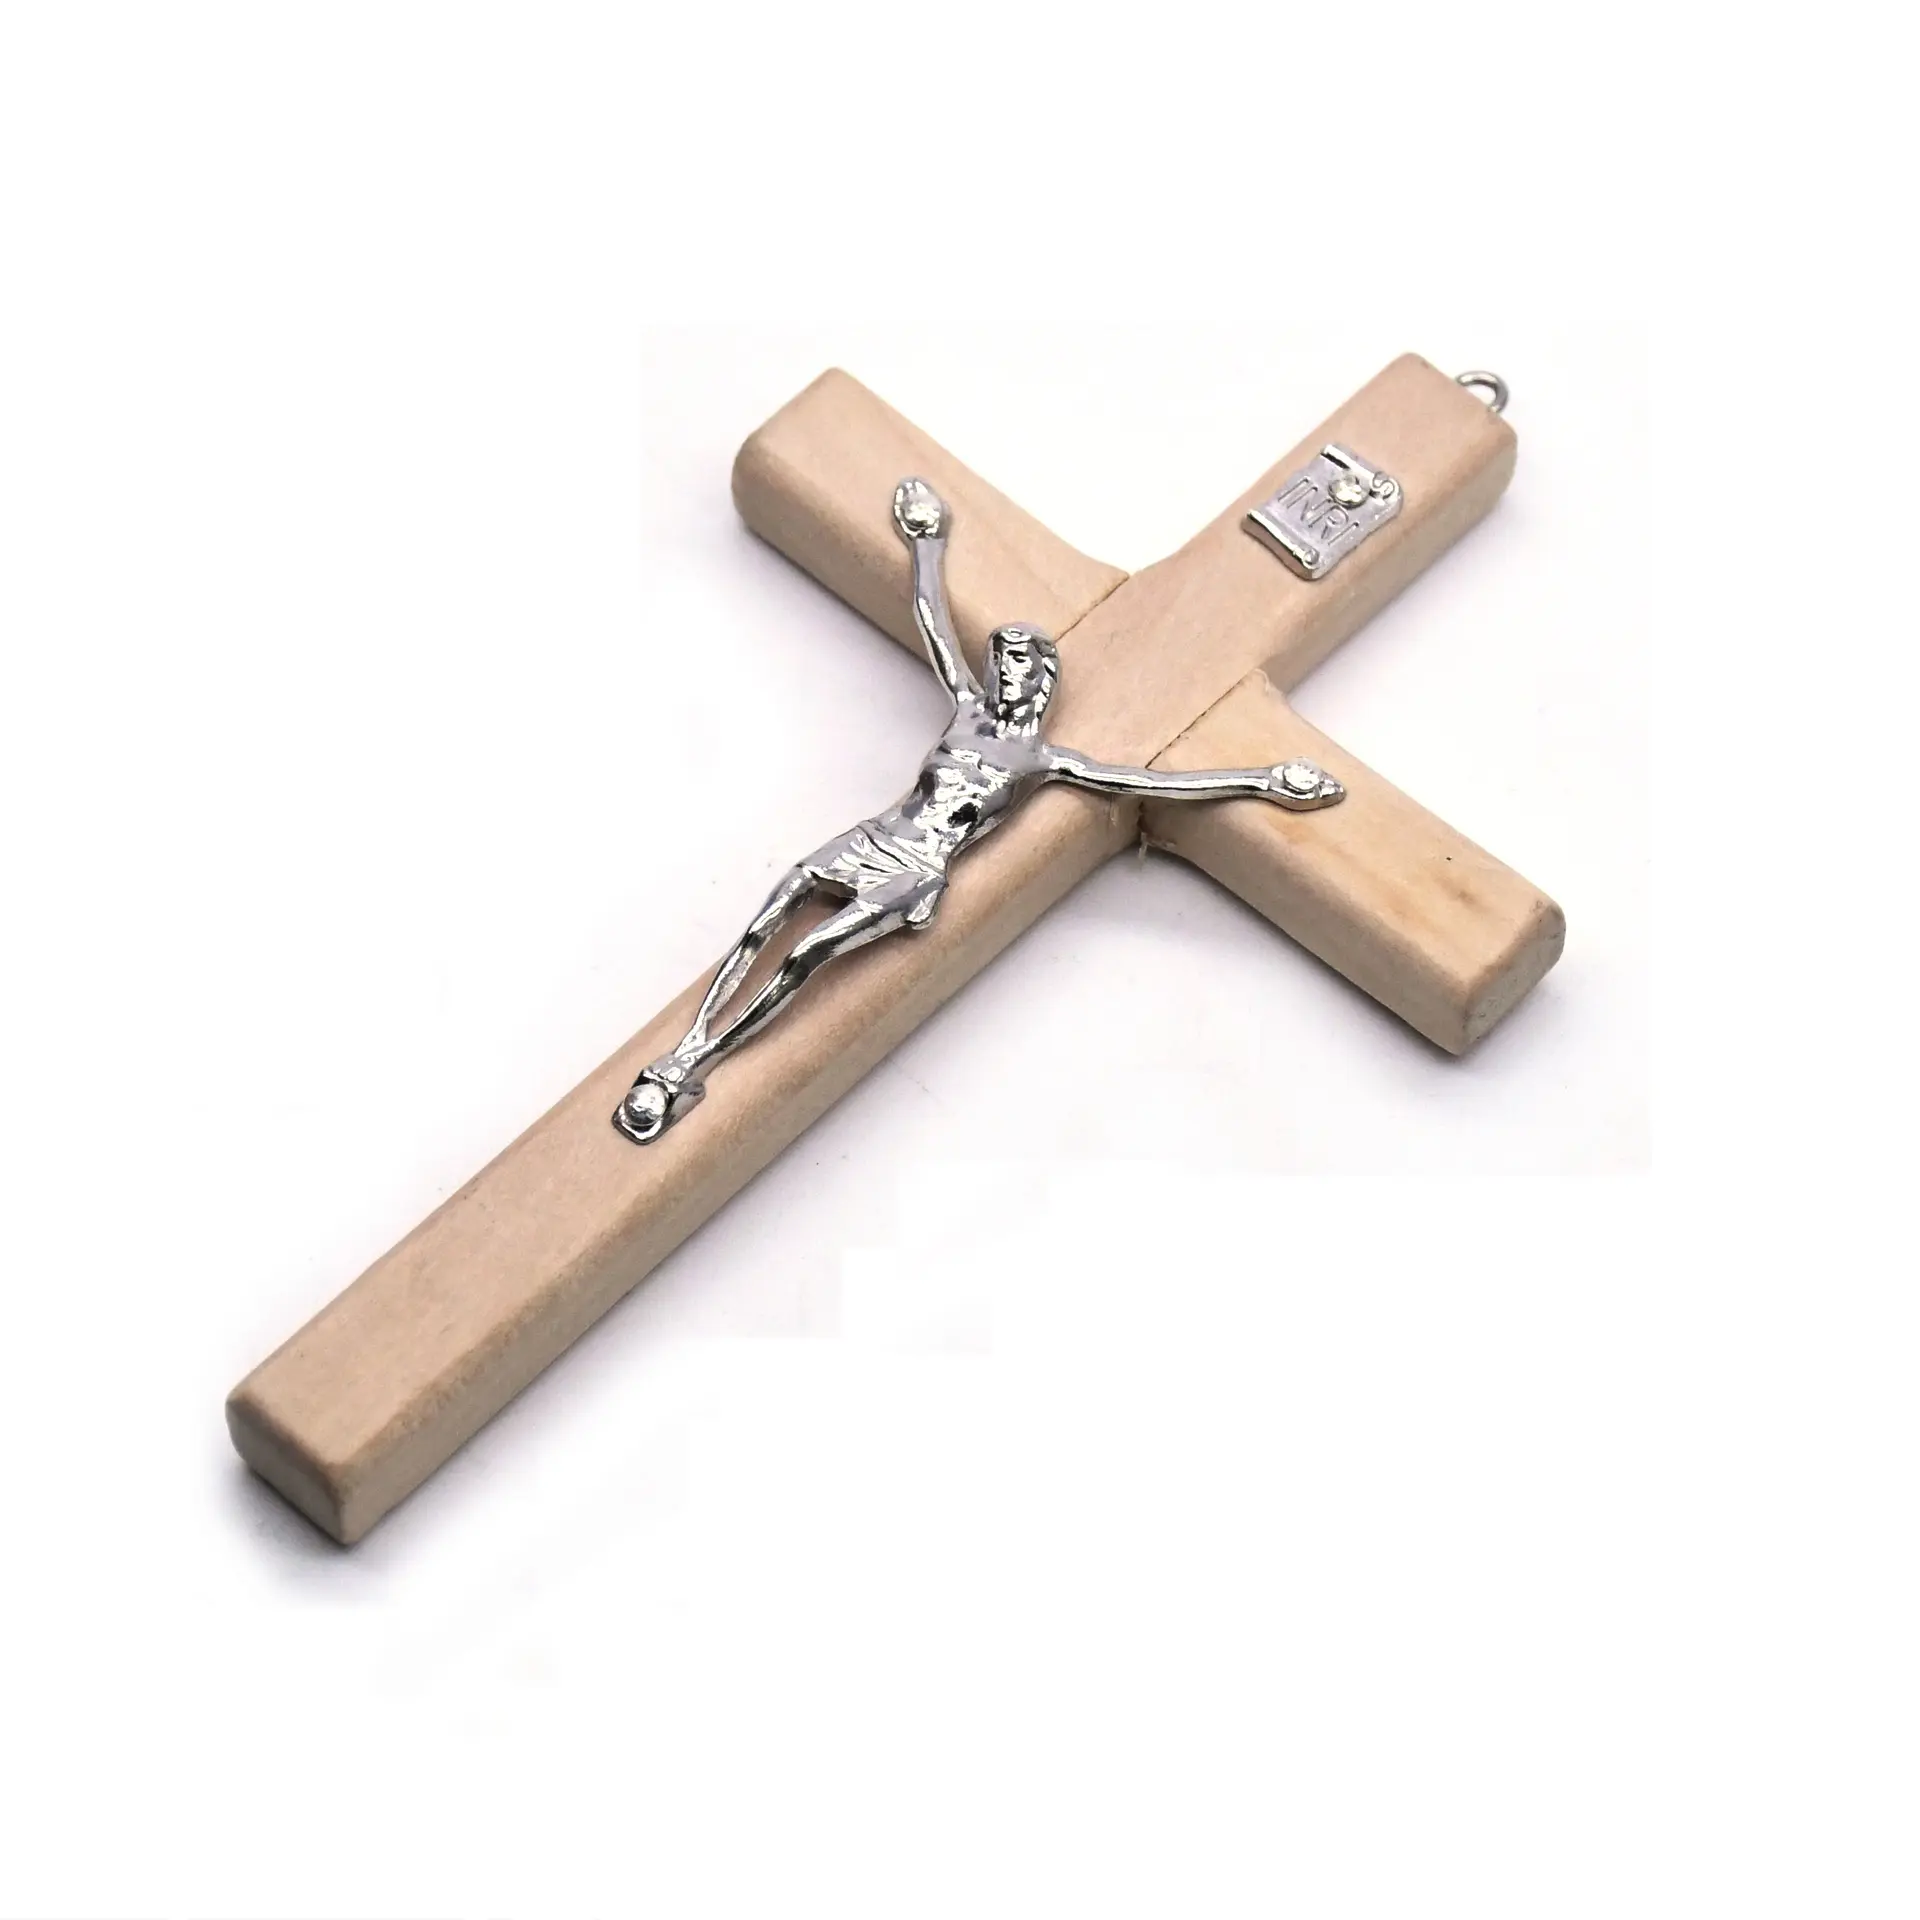 الخشب الصليب الصليب الخشب 4.7 بوصة الدينية يسوع نعمة سحر ل DIY كرافت الإحسان